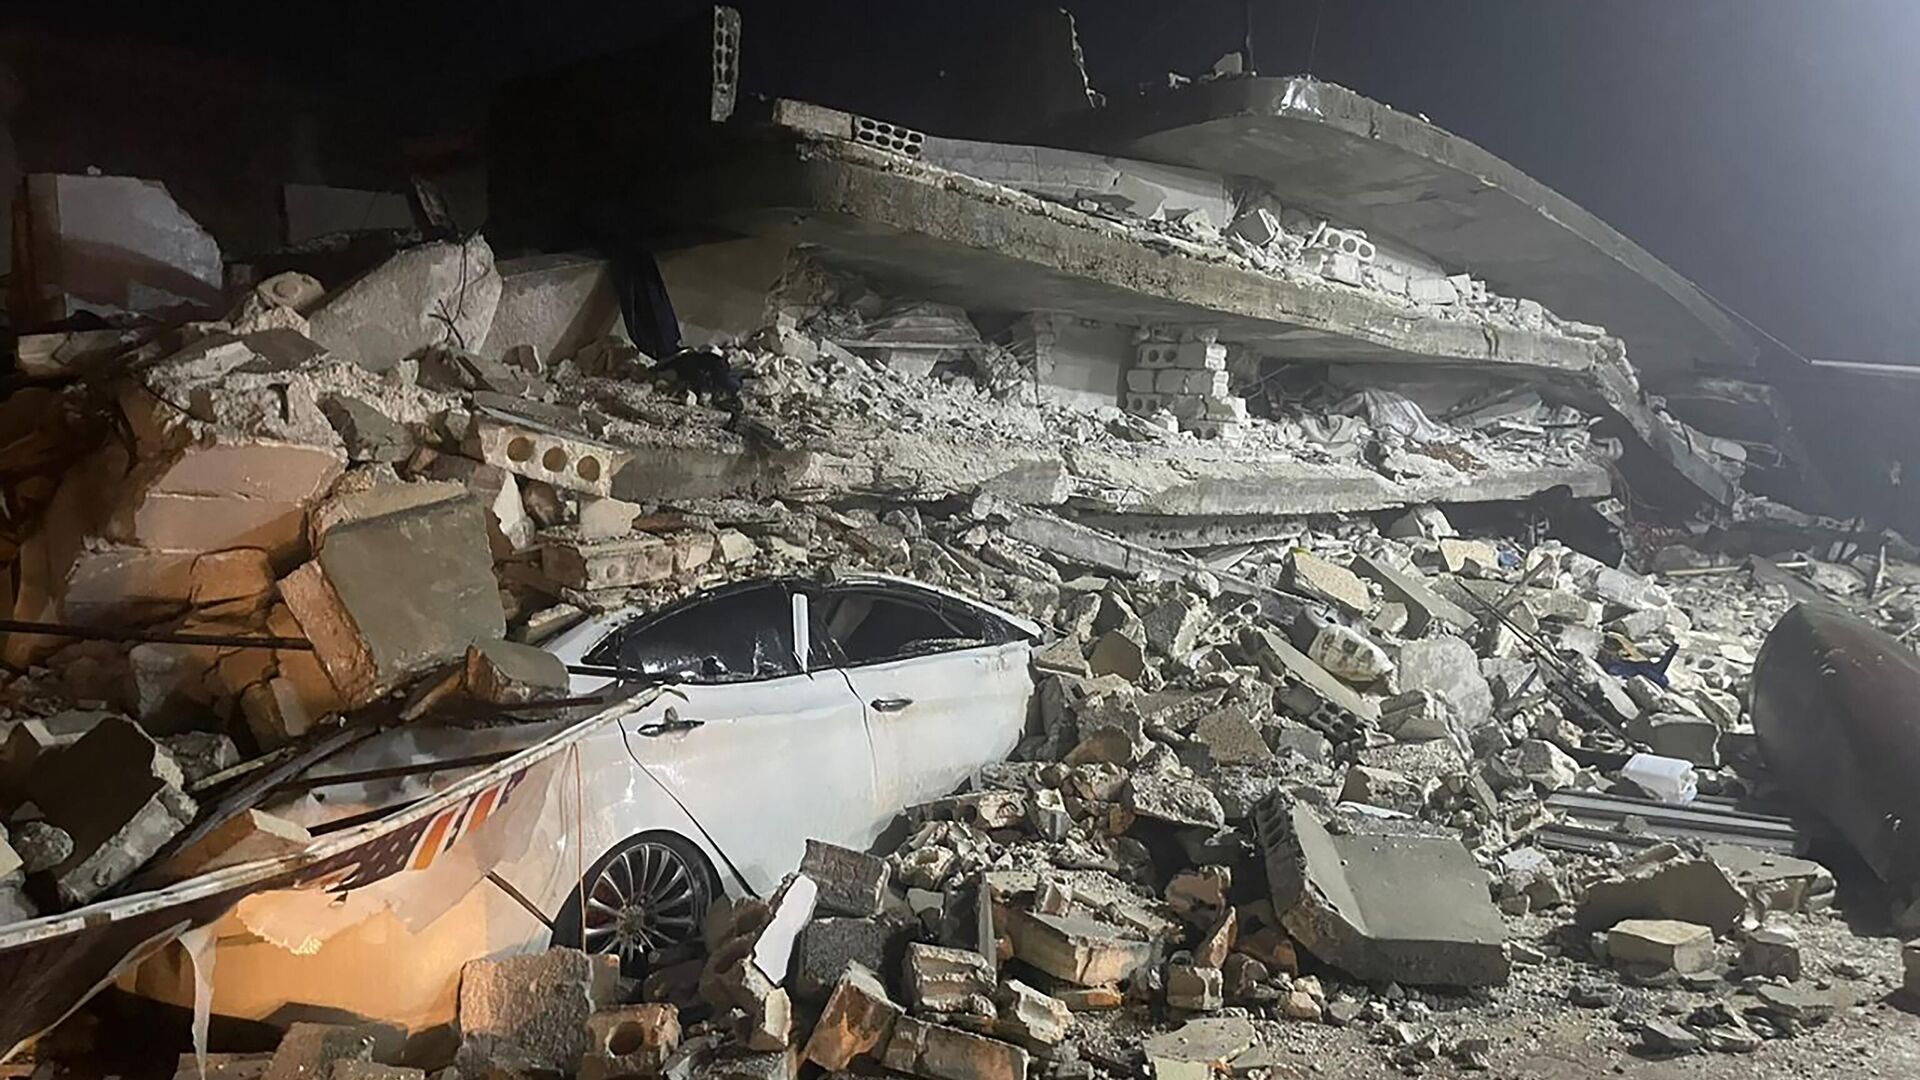 Takut Terjadi Gempa Susulan, Warga Suriah Tidur di Mobil yang Diparkir